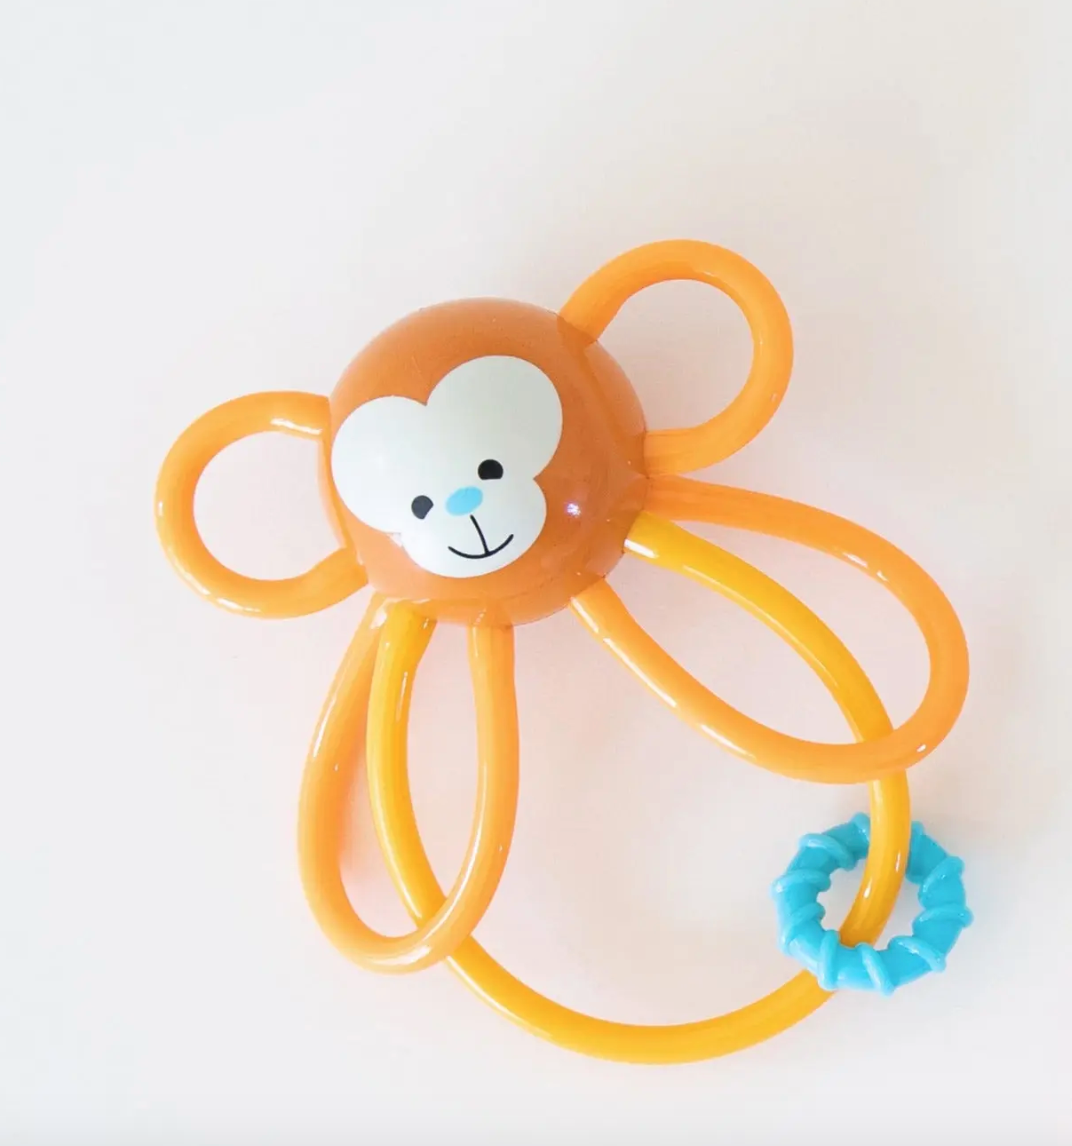 Manhattan Toy Winkel Monkey